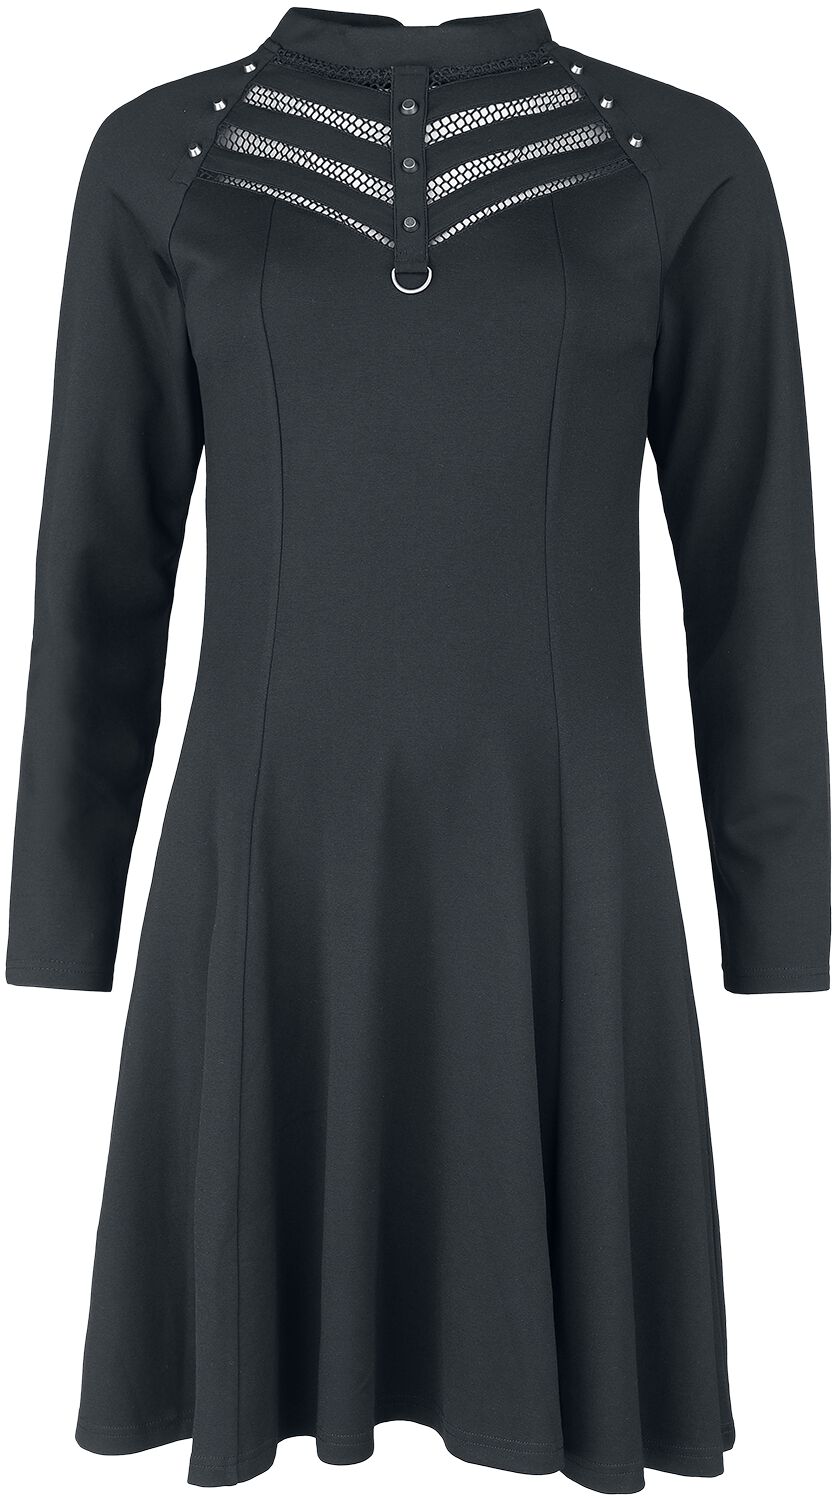 Kleid mit Netzausschnitt am Dekolleté Kurzes Kleid schwarz von Gothicana by EMP